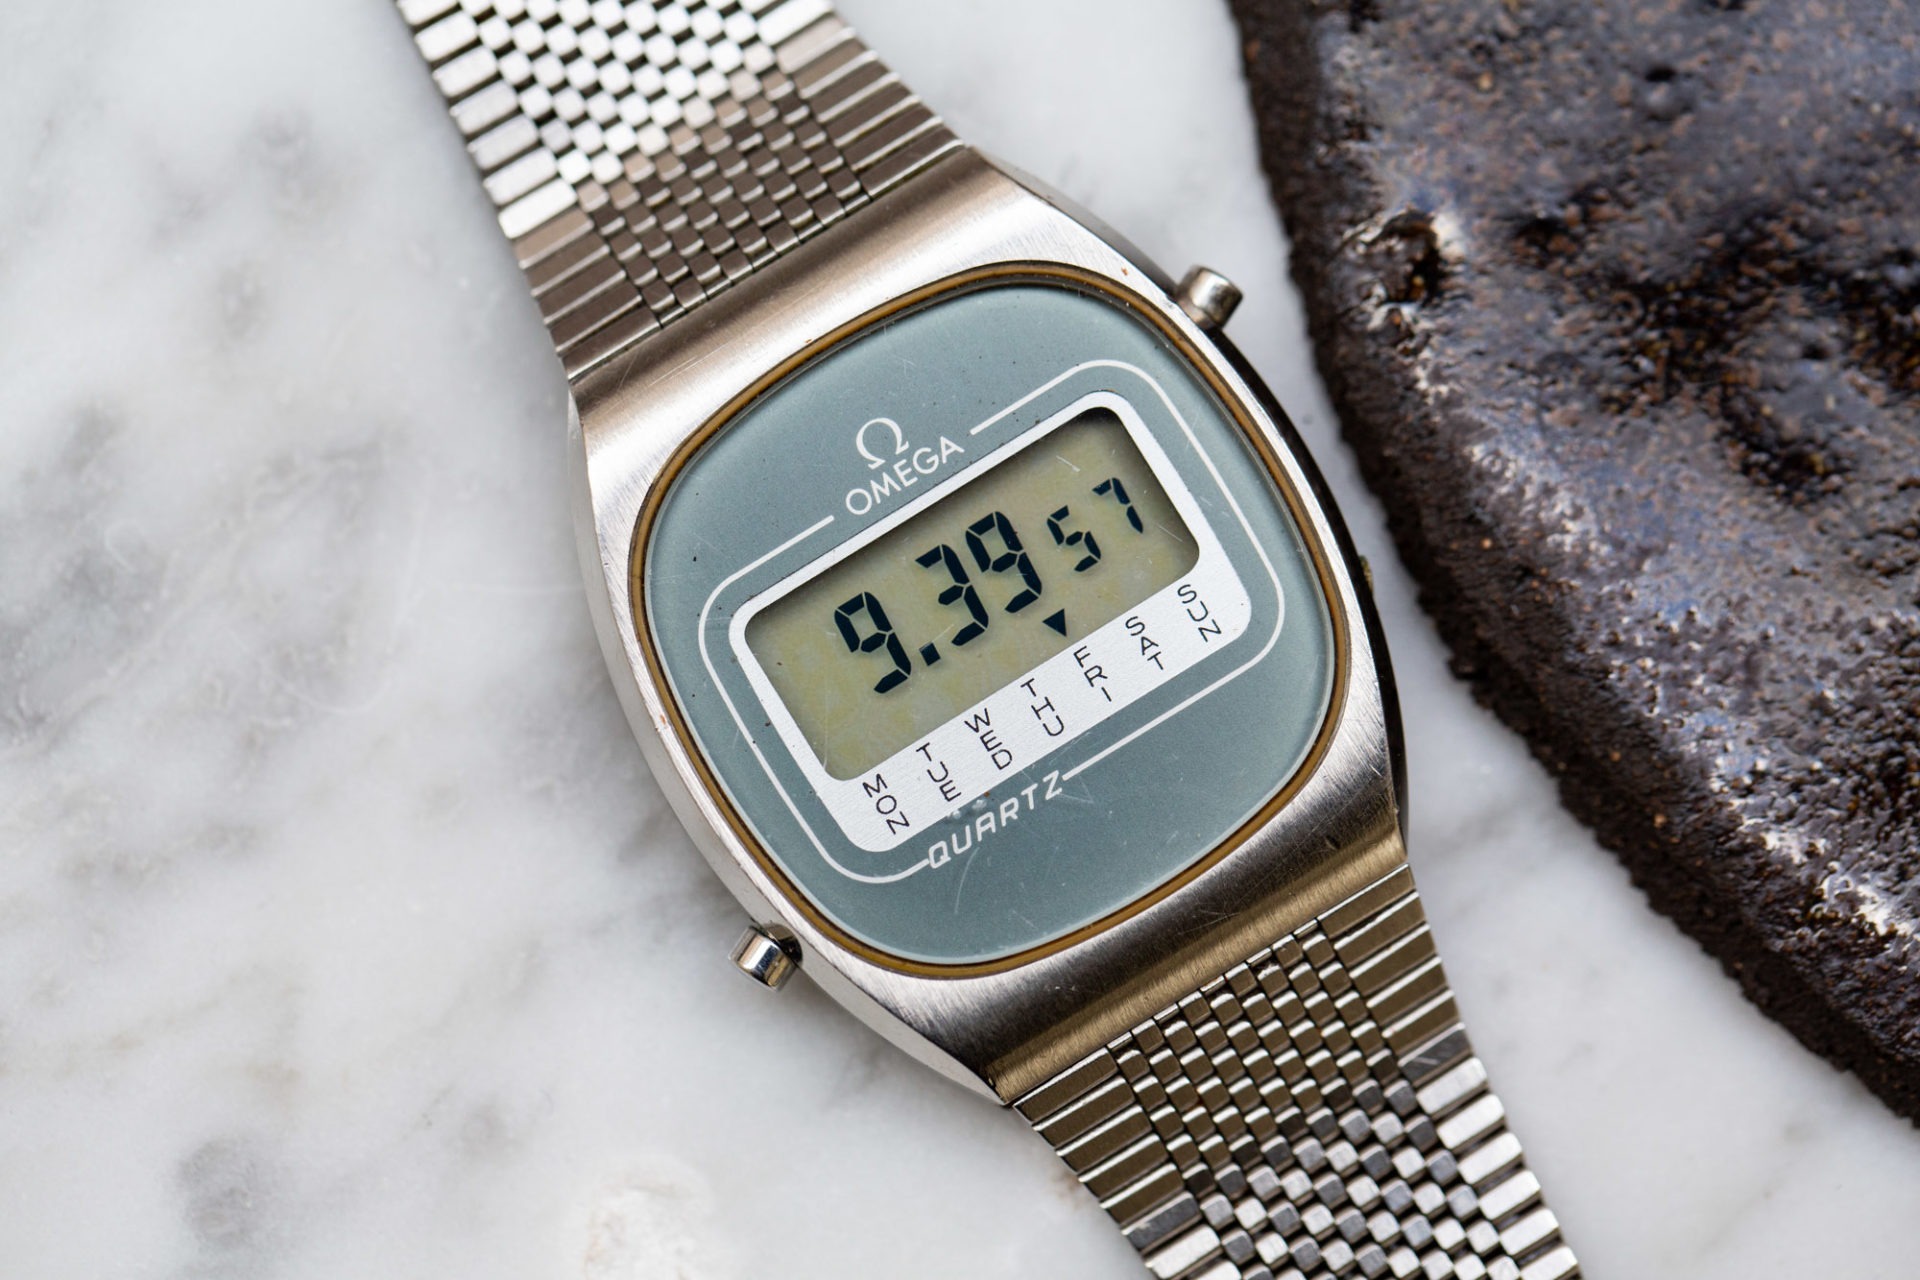 Omega LCD réf. 196.0074 - Sélection de montres vintage chez Joseph Bonnie